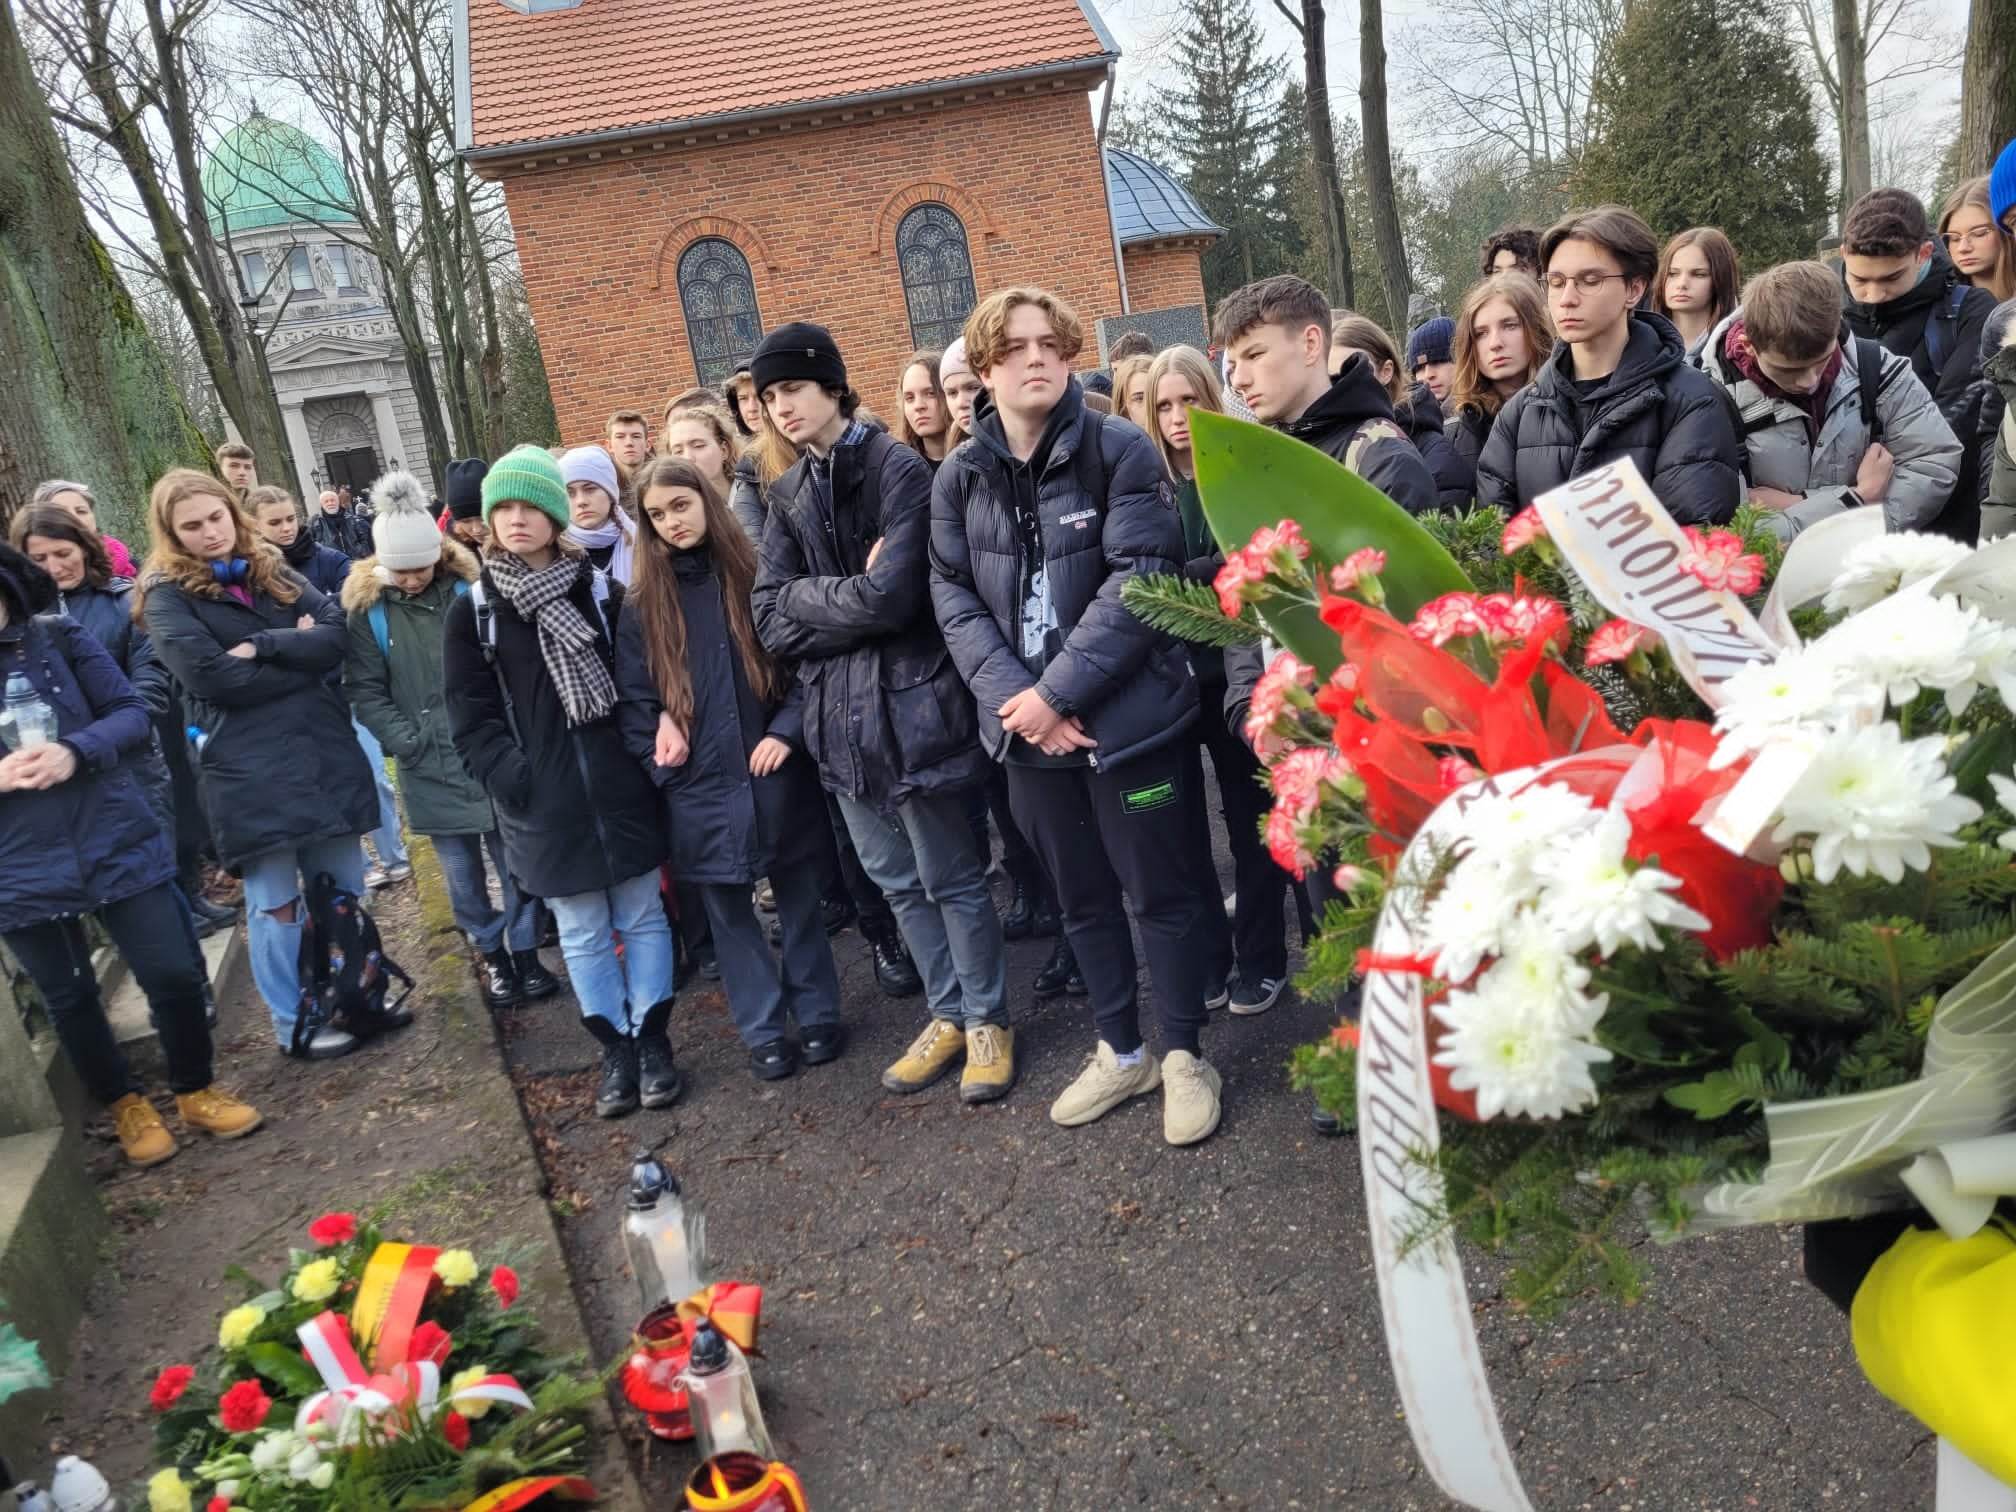 Uczniowie XIII LO przy grobie Marii Piotrowiczowej - patronki szkoły